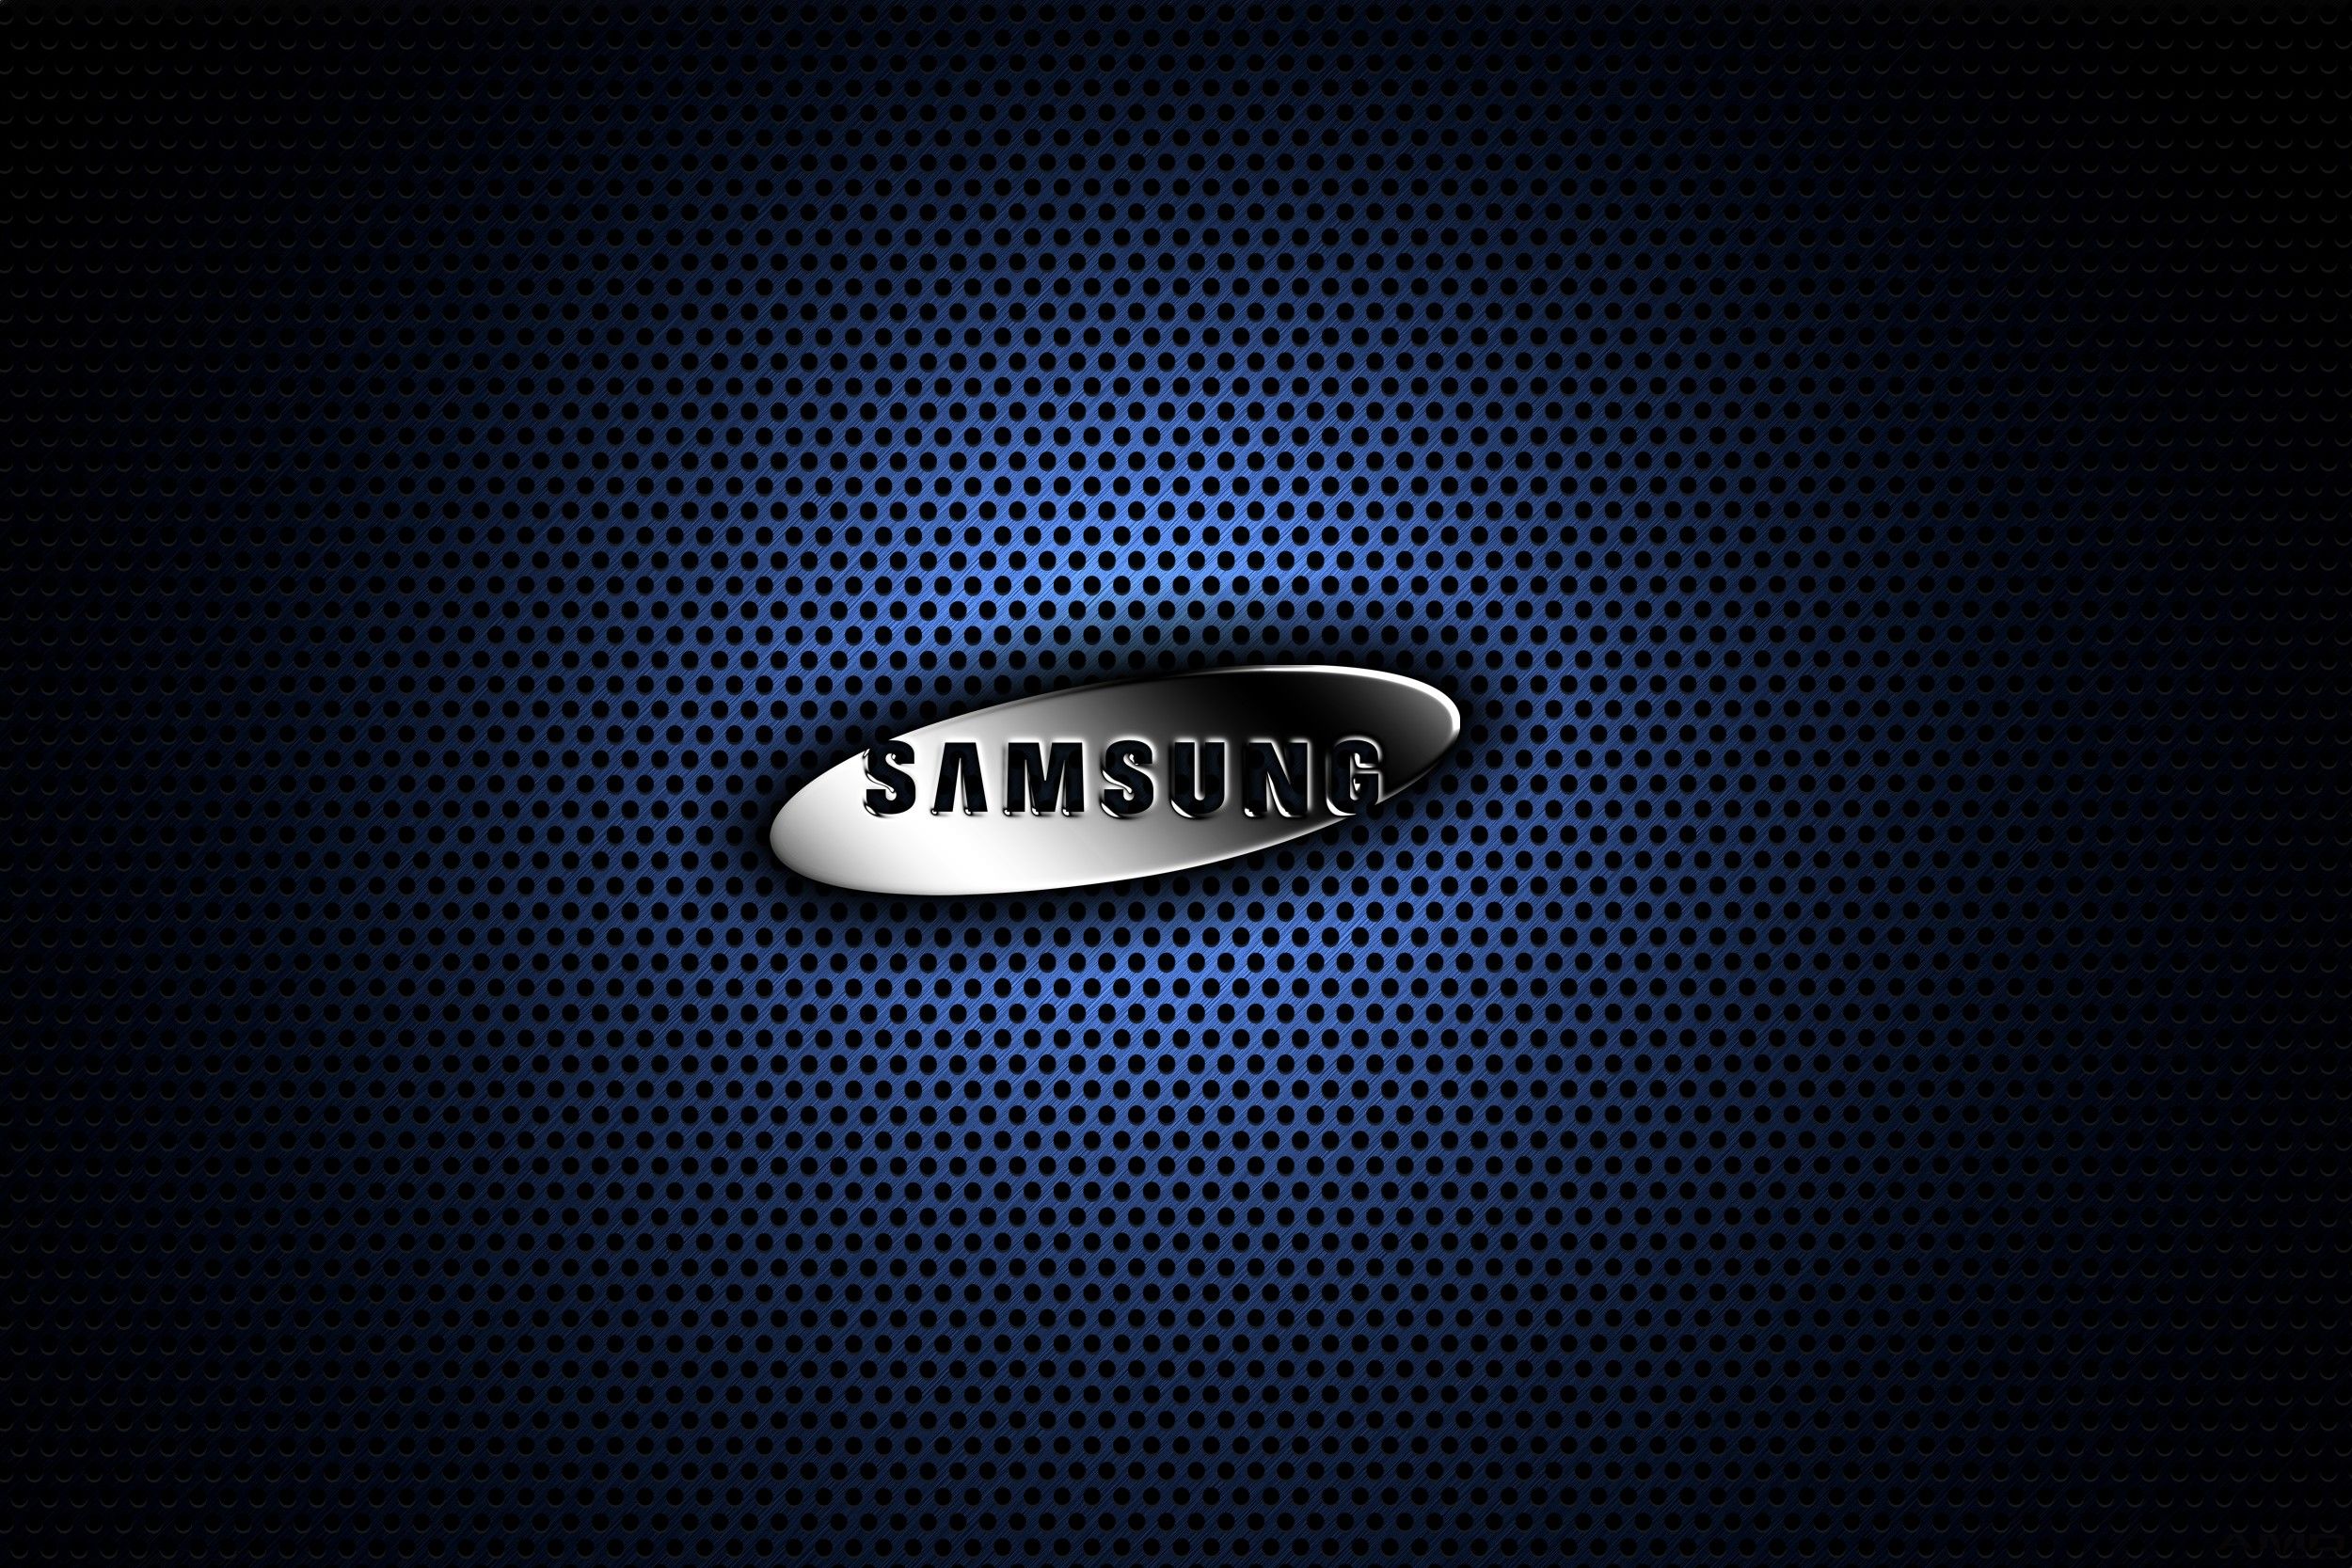 Samsung Wallpaper - Best Car 2015